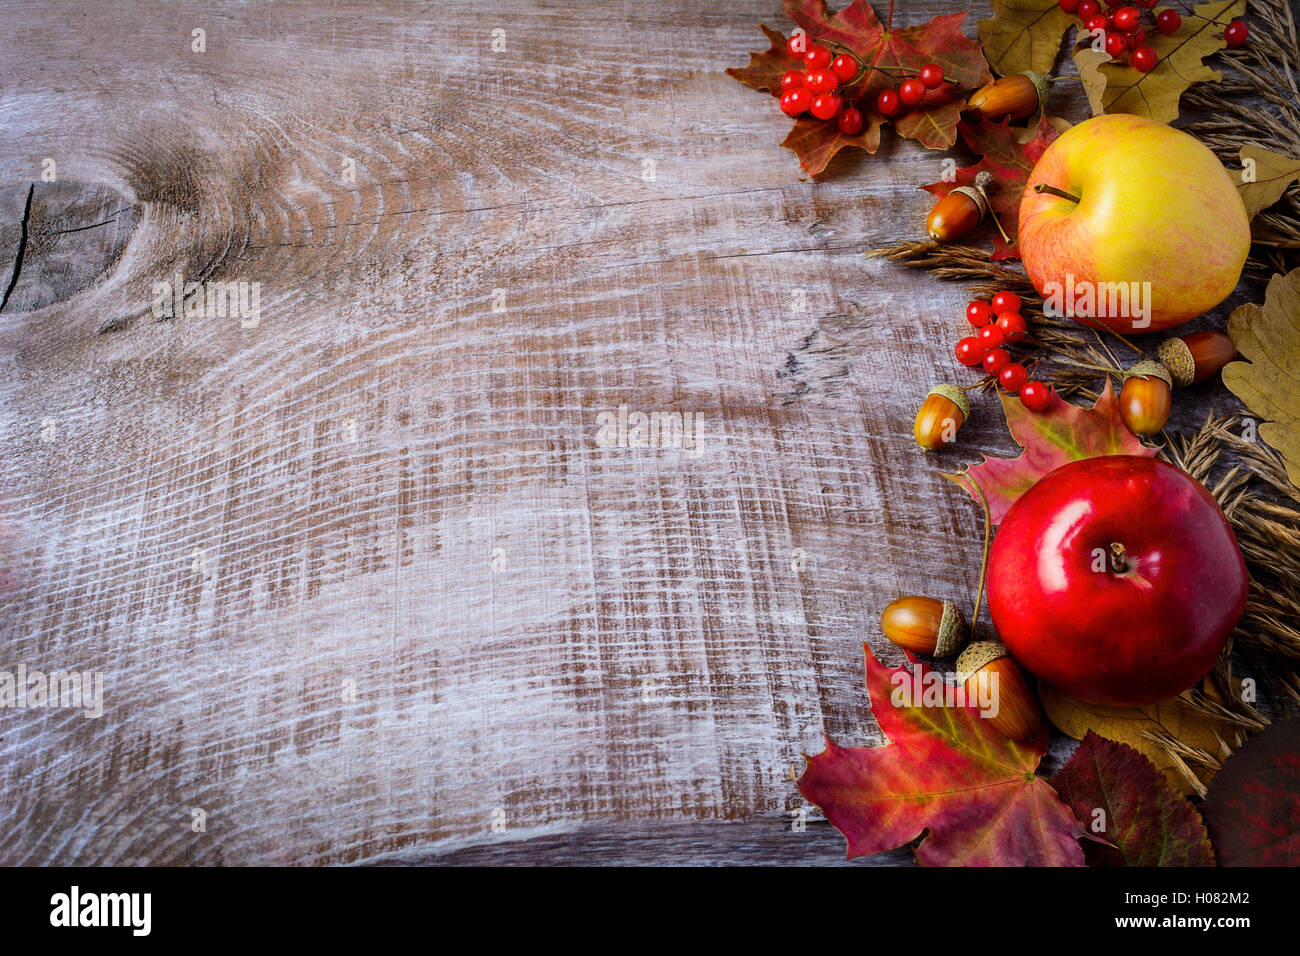 Frontière de pommes, de baies et de feuilles d'automne sur le fond en bois rustique. Arrière-plan de l'action de grâce avec les petits fruits de saison et fru Banque D'Images